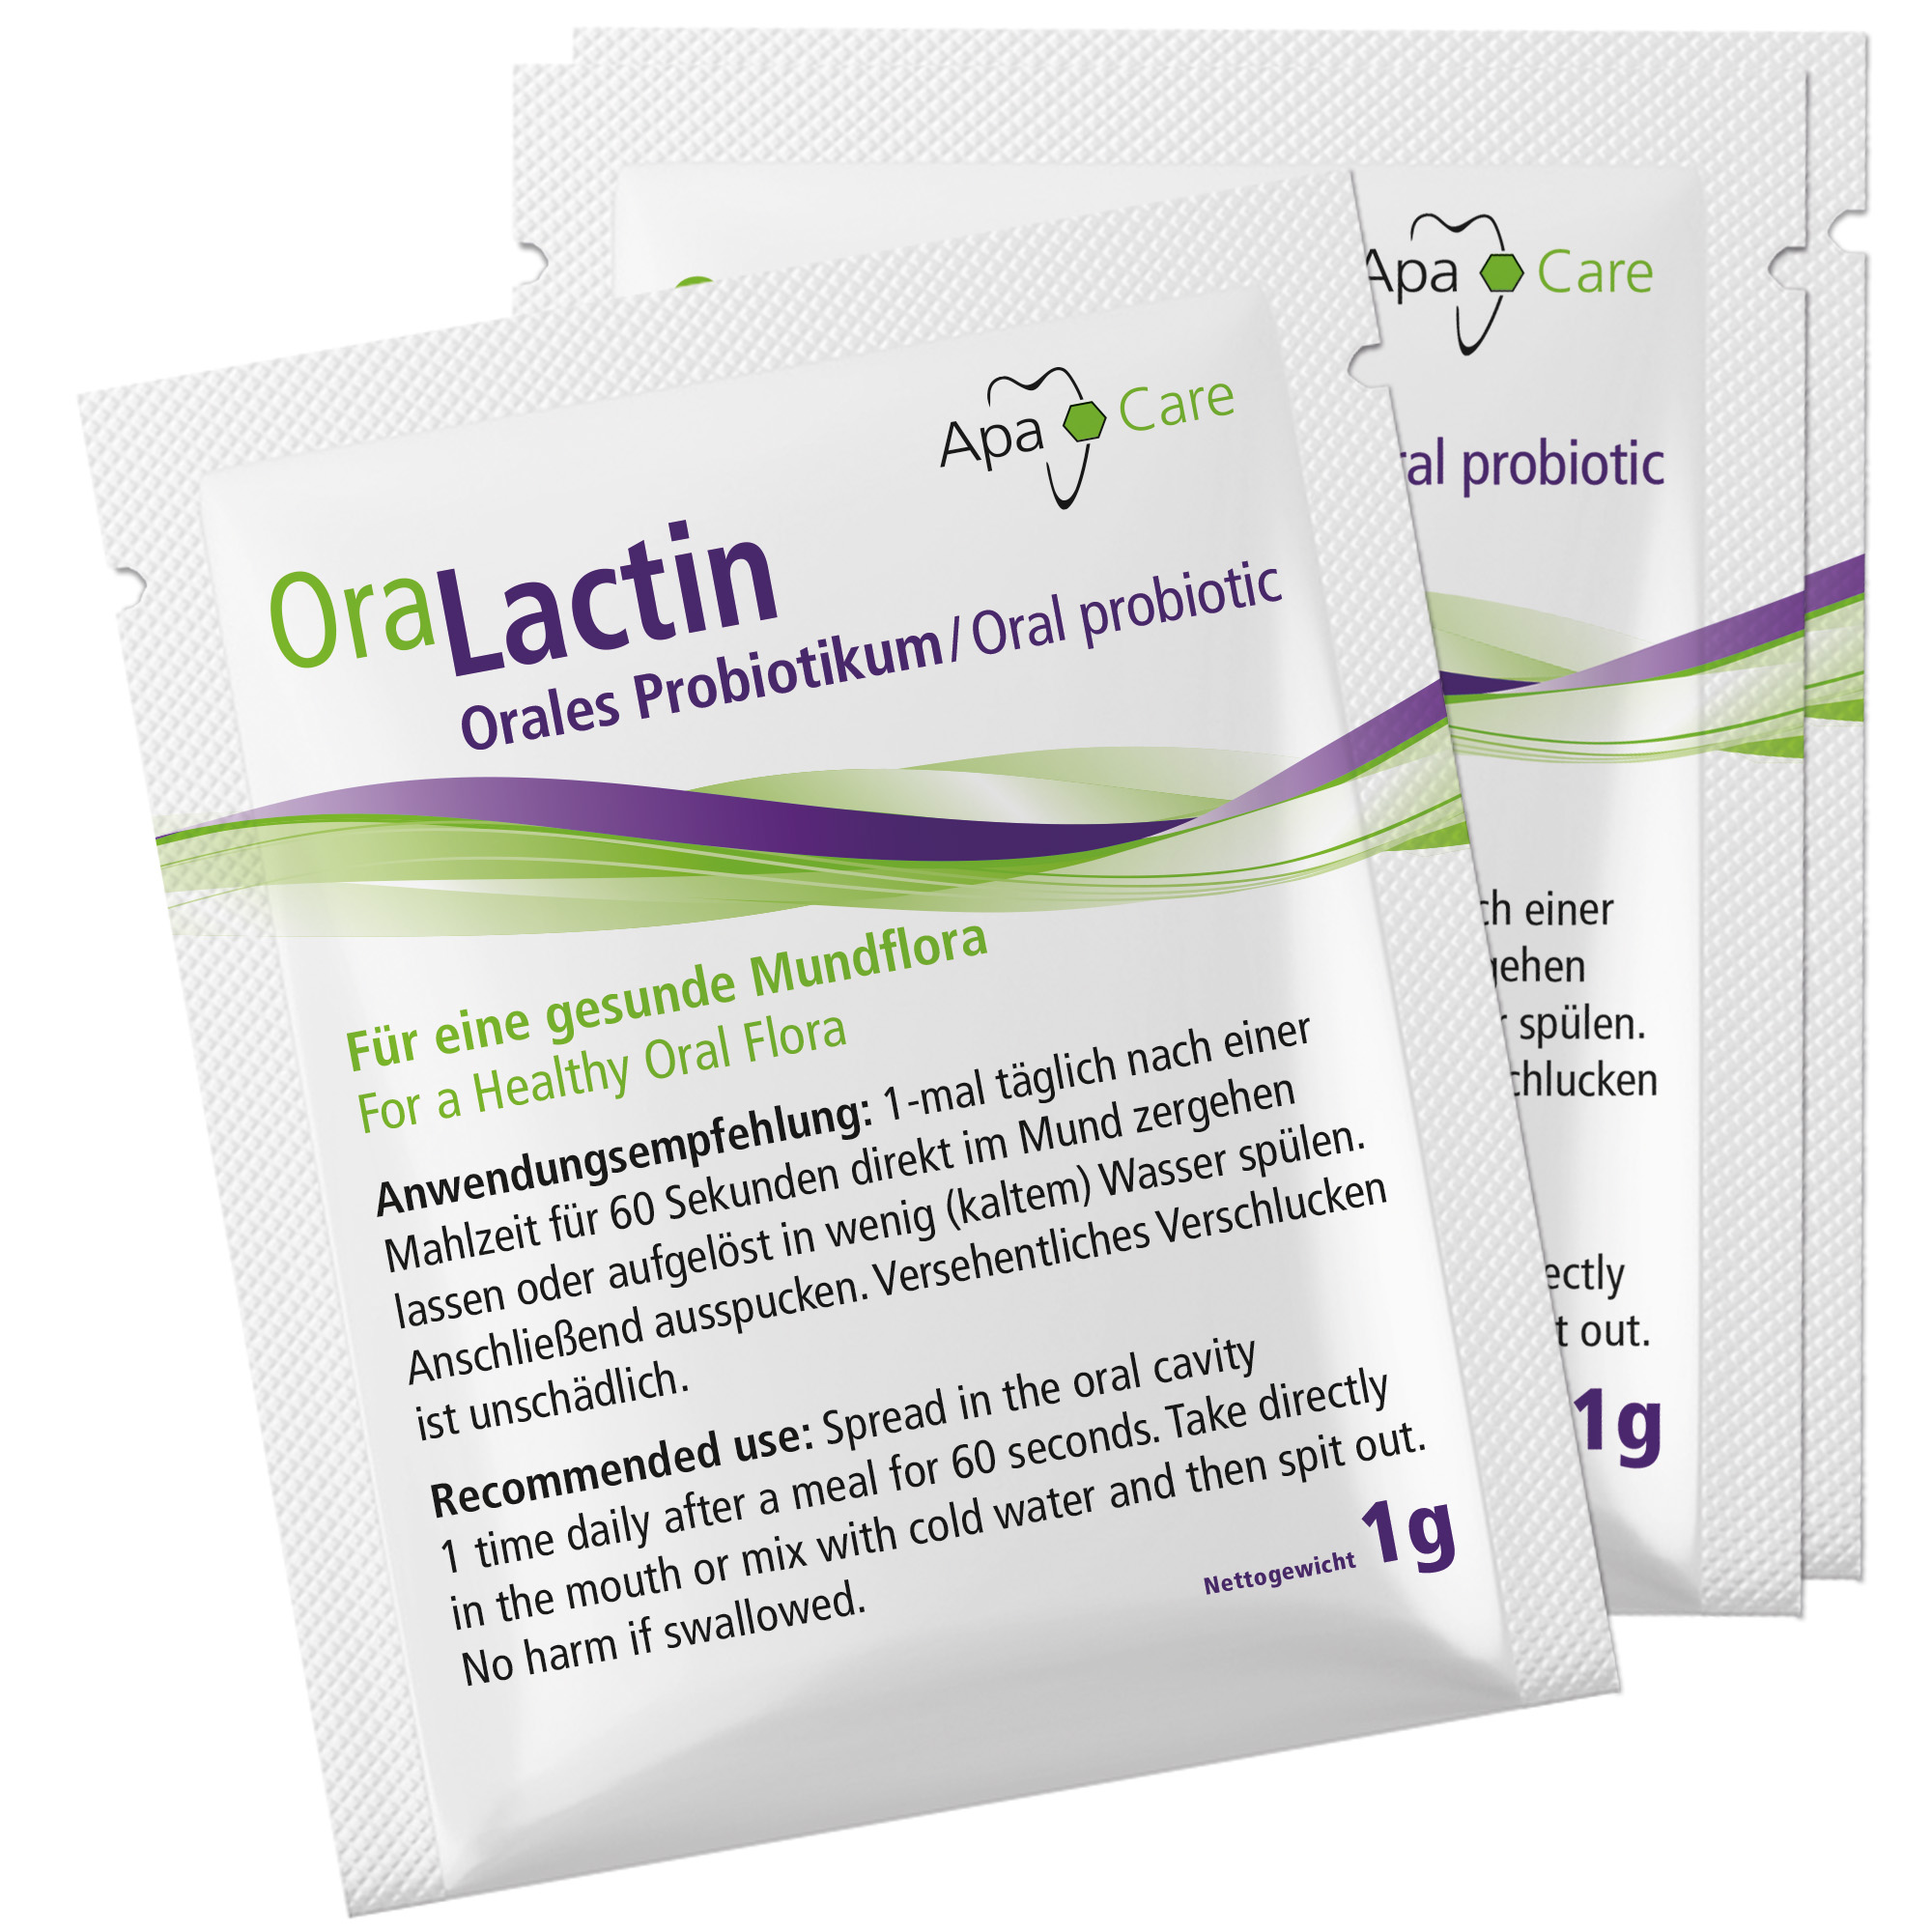 OraLactin Orales Probiotikum Sachets 